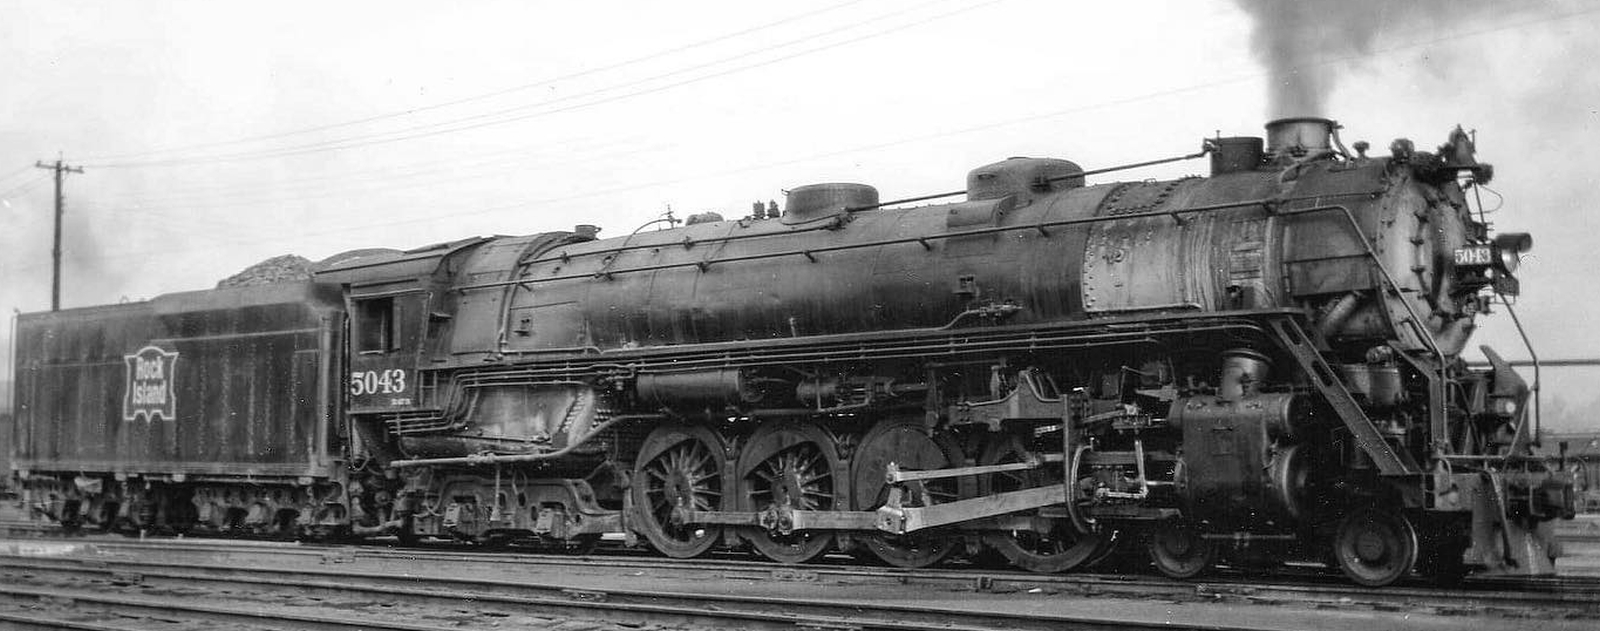 R-67b No. 5043 in October 1940 at Kansas City